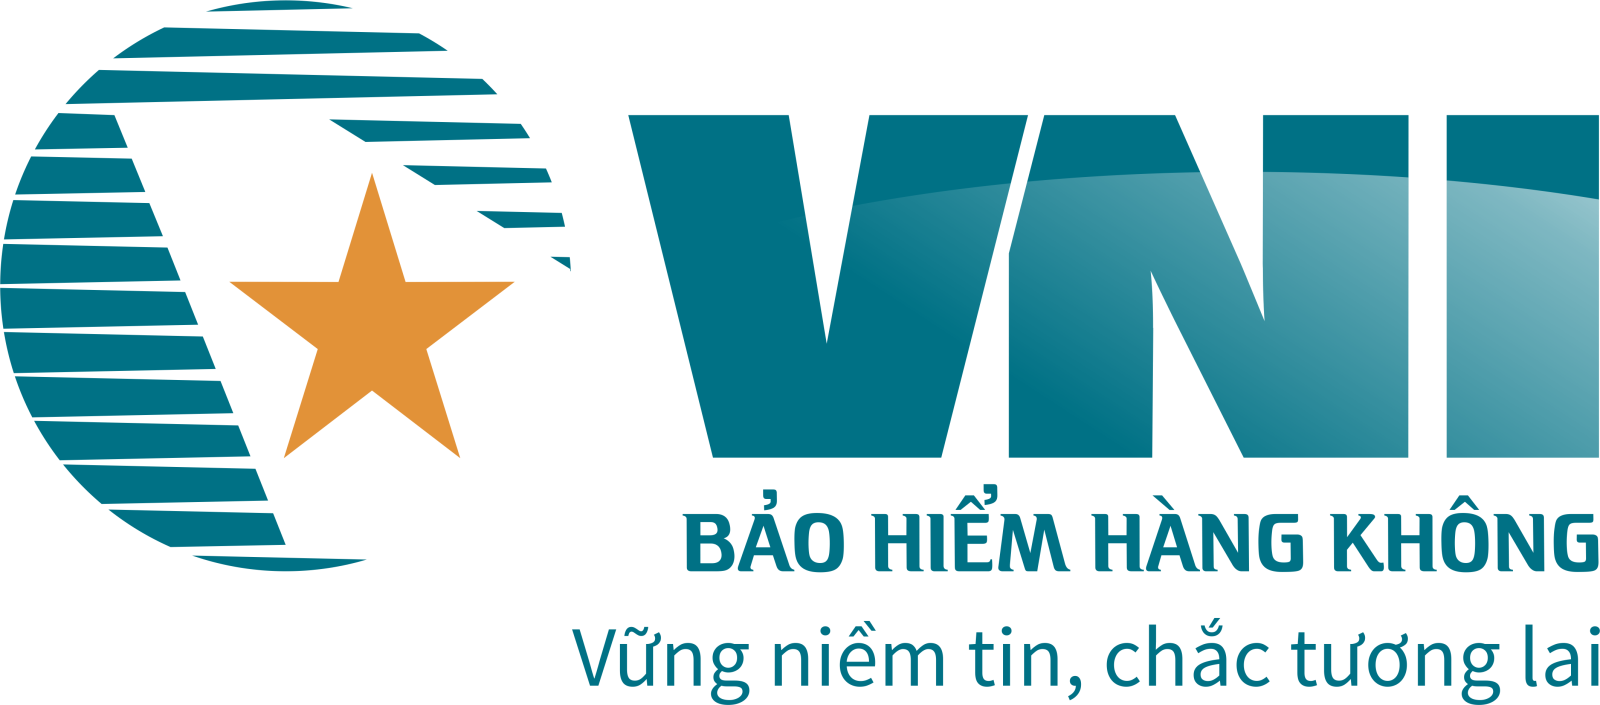 Logo-Bao-hiem-hang-khong1.png